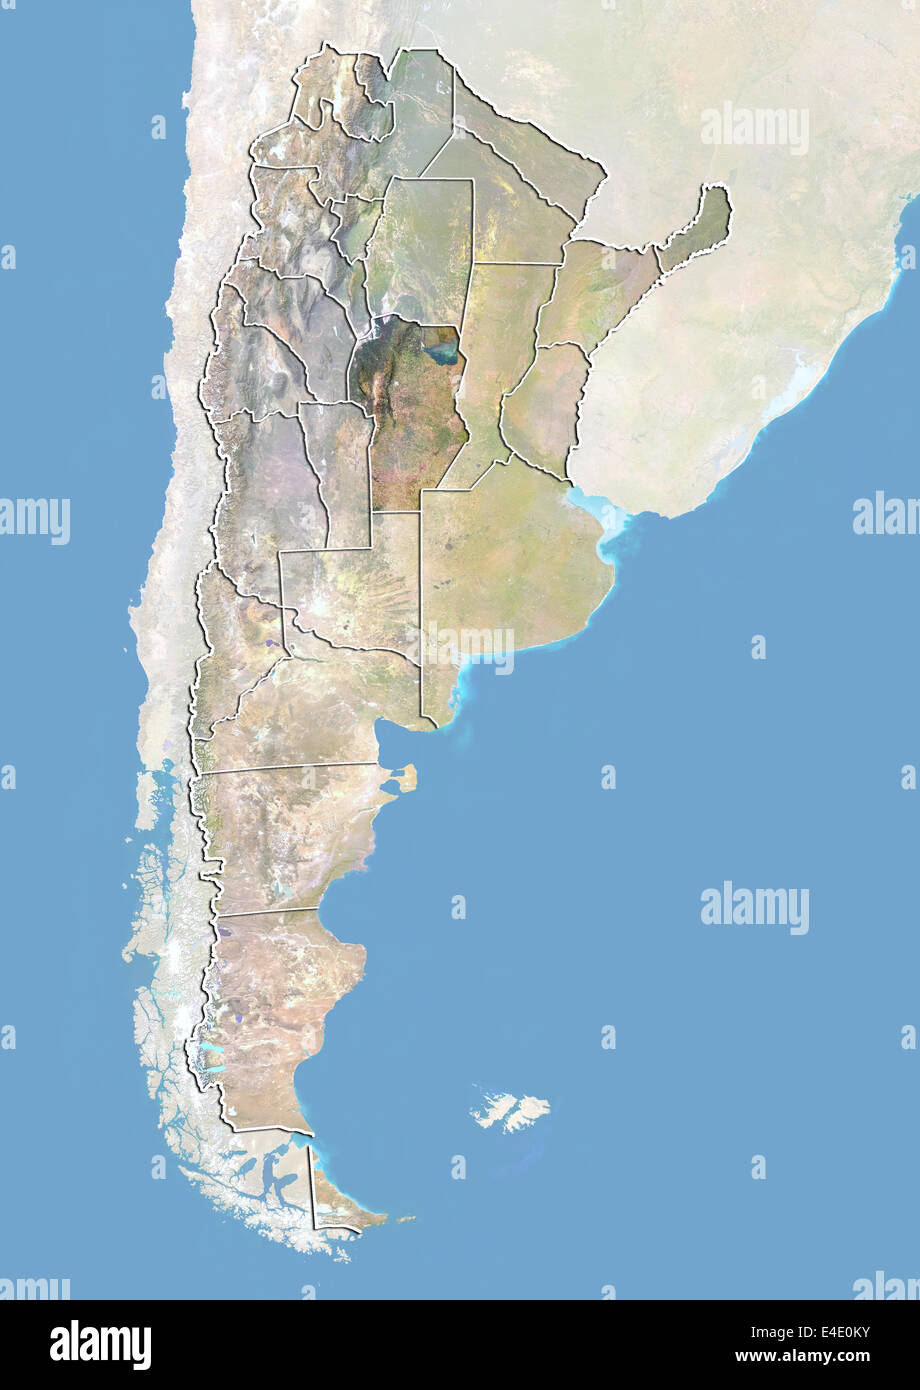 L'Argentine et de la Province de Cordoba, image satellite avec effet de choc Banque D'Images